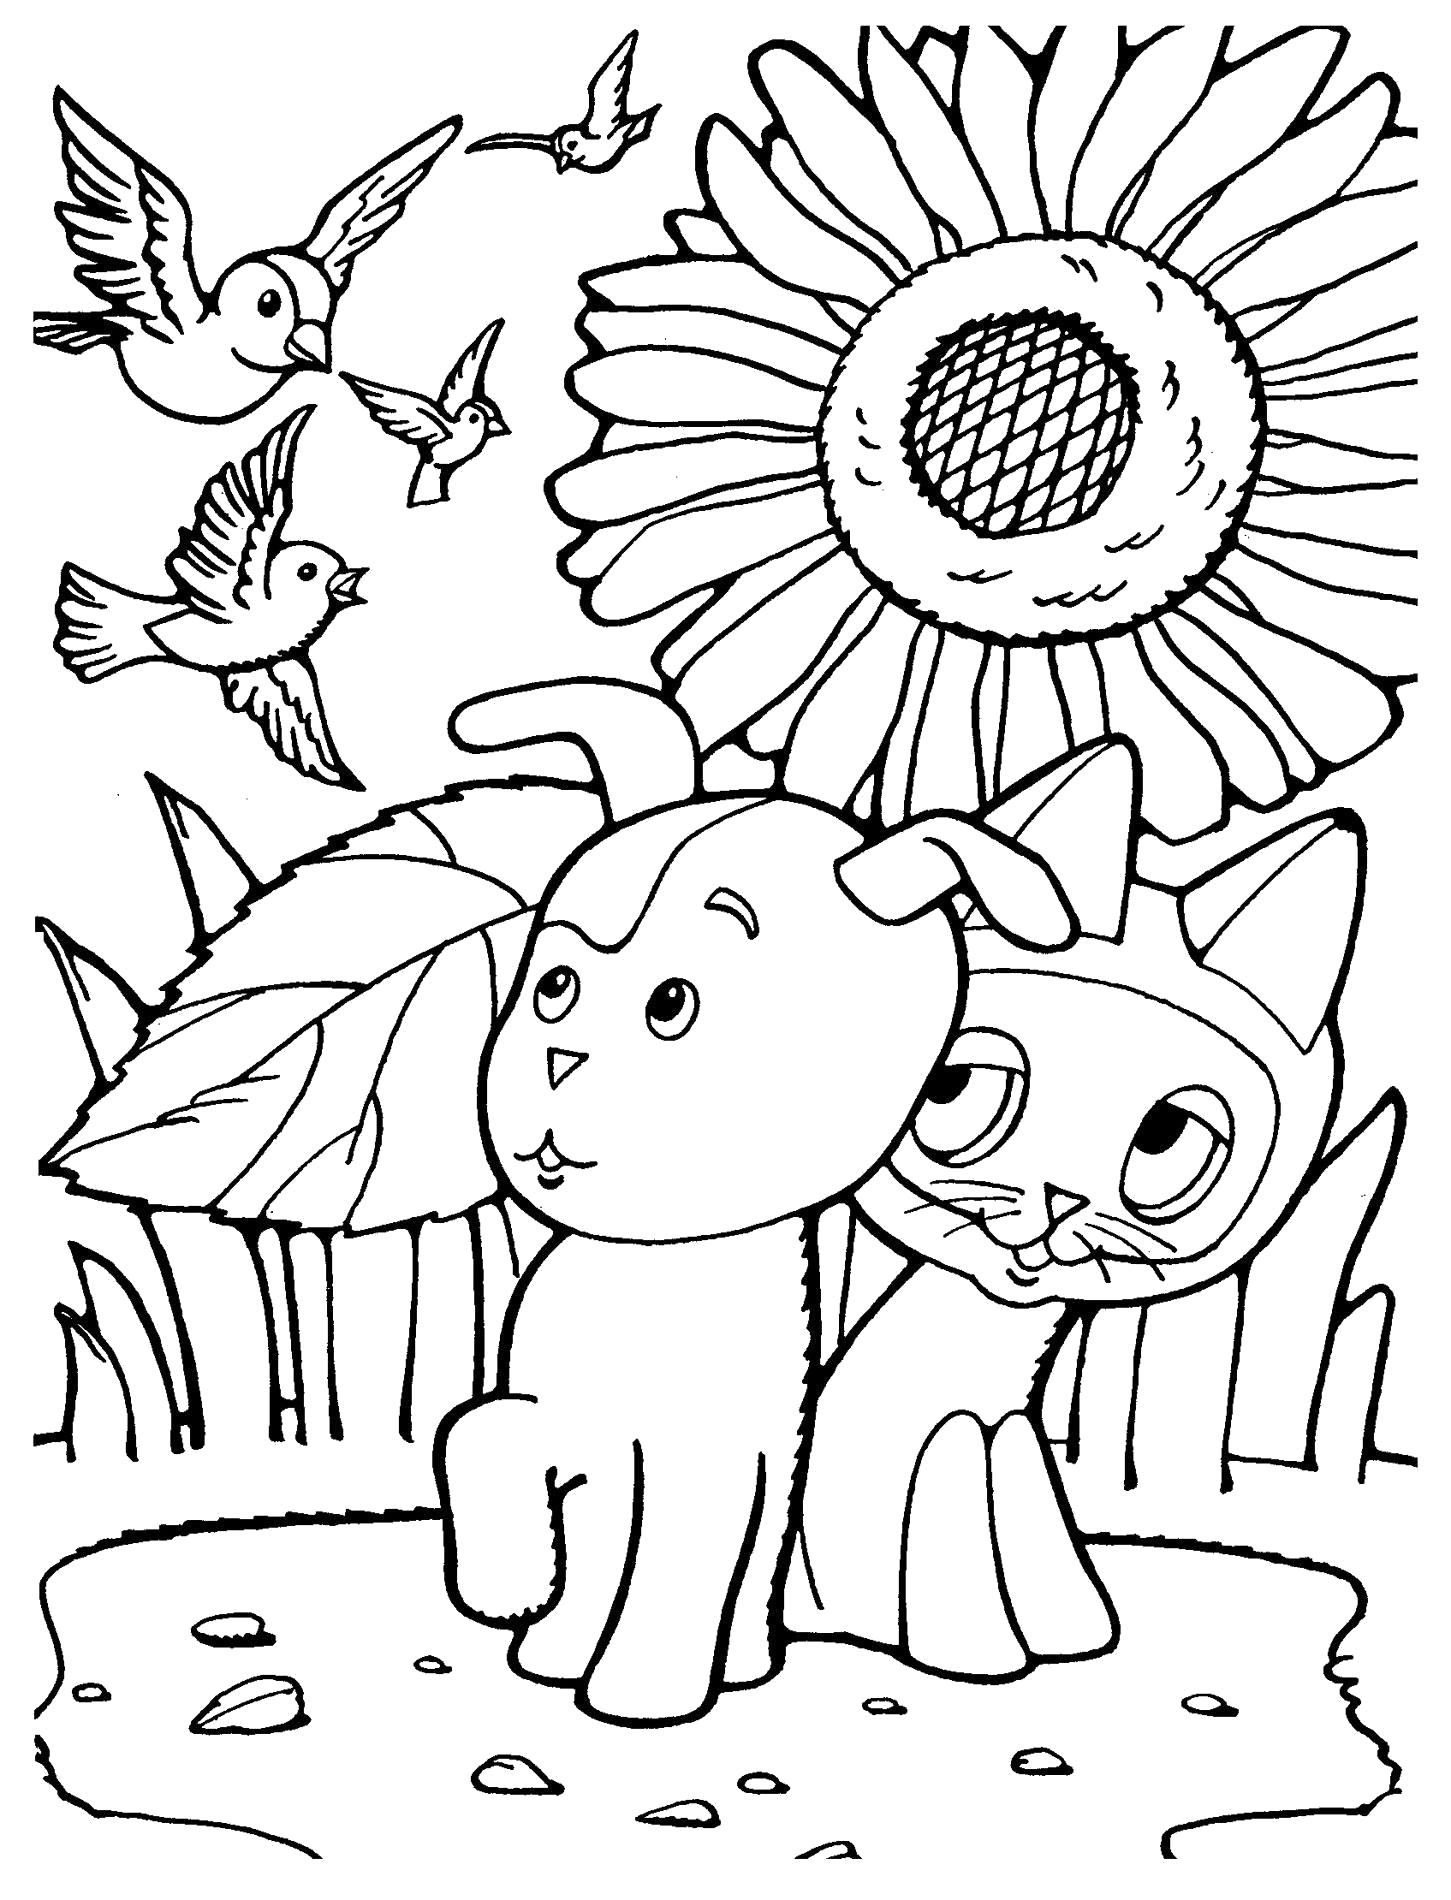 Раскраска Мультфильм Котенок по имени Гав! котенок и собака шарик испугались птиц. Скачать .  Распечатать 